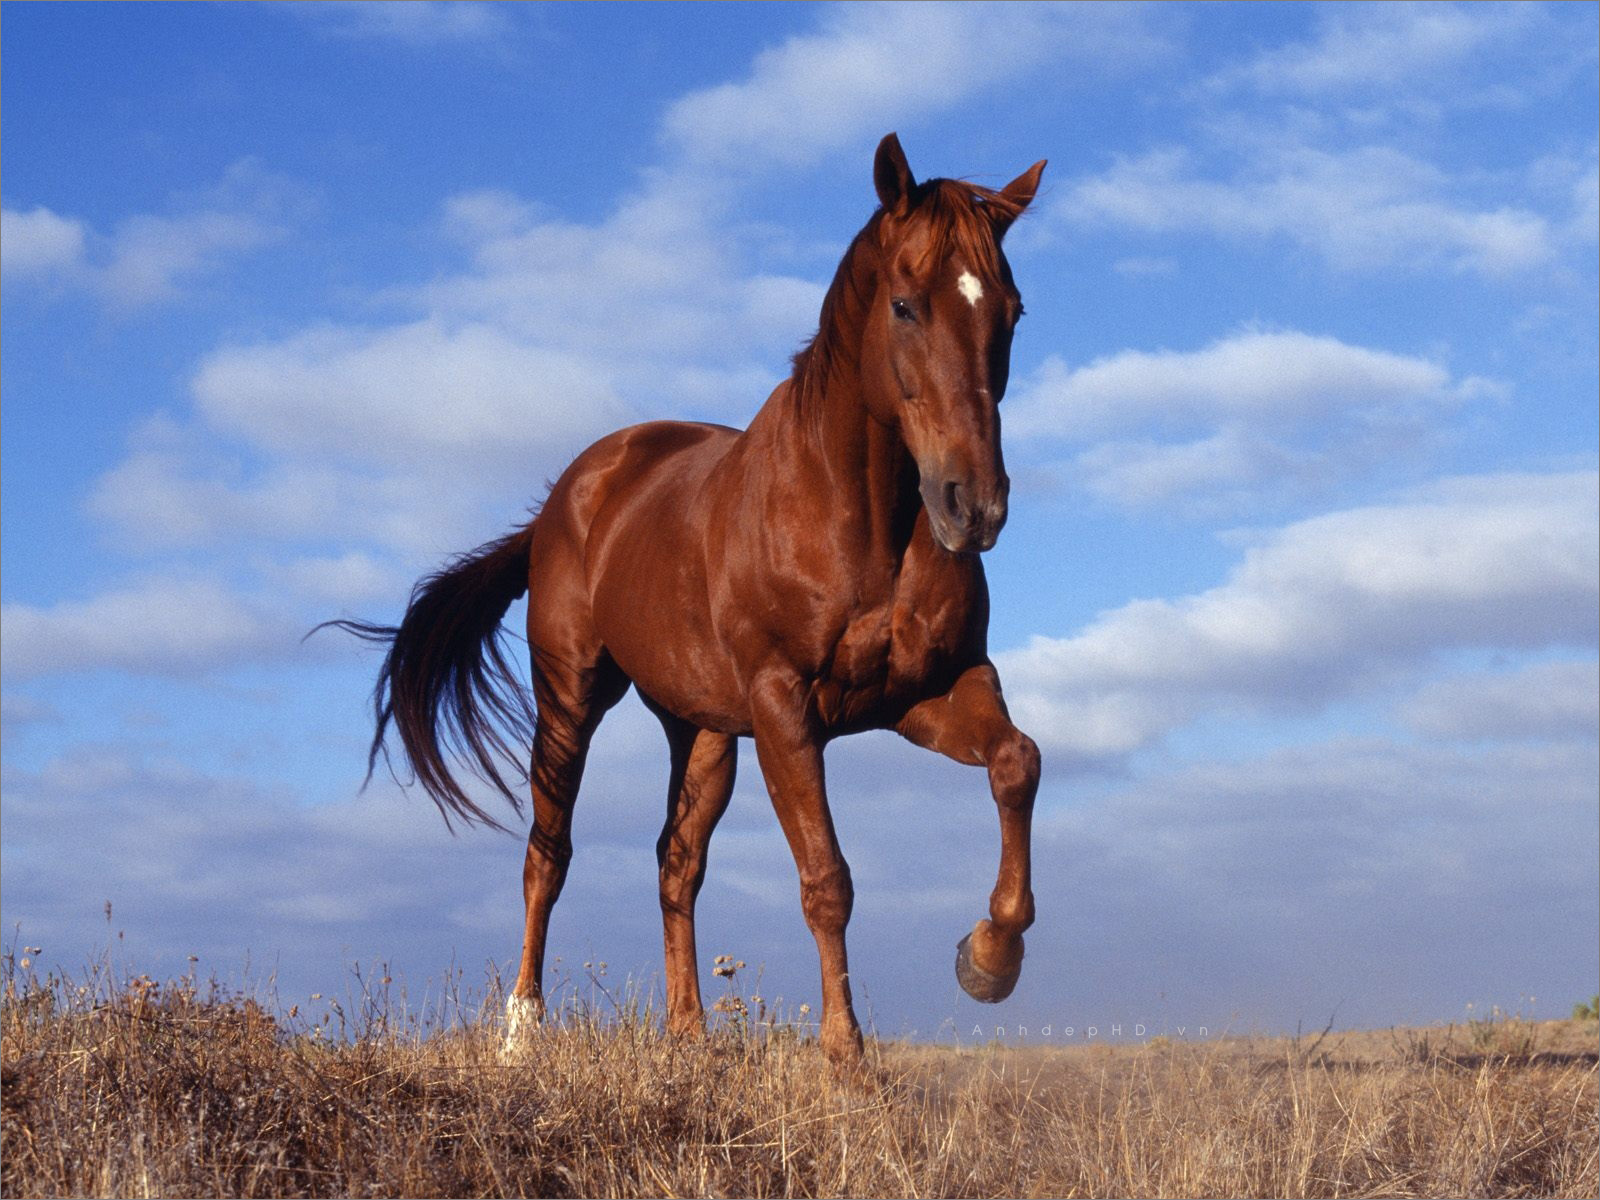 Hình ảnh ngựa trong văn hóa Đông - Tây có gì đặc biệt? | Phong thủy |  TriThucCuocSong.vn